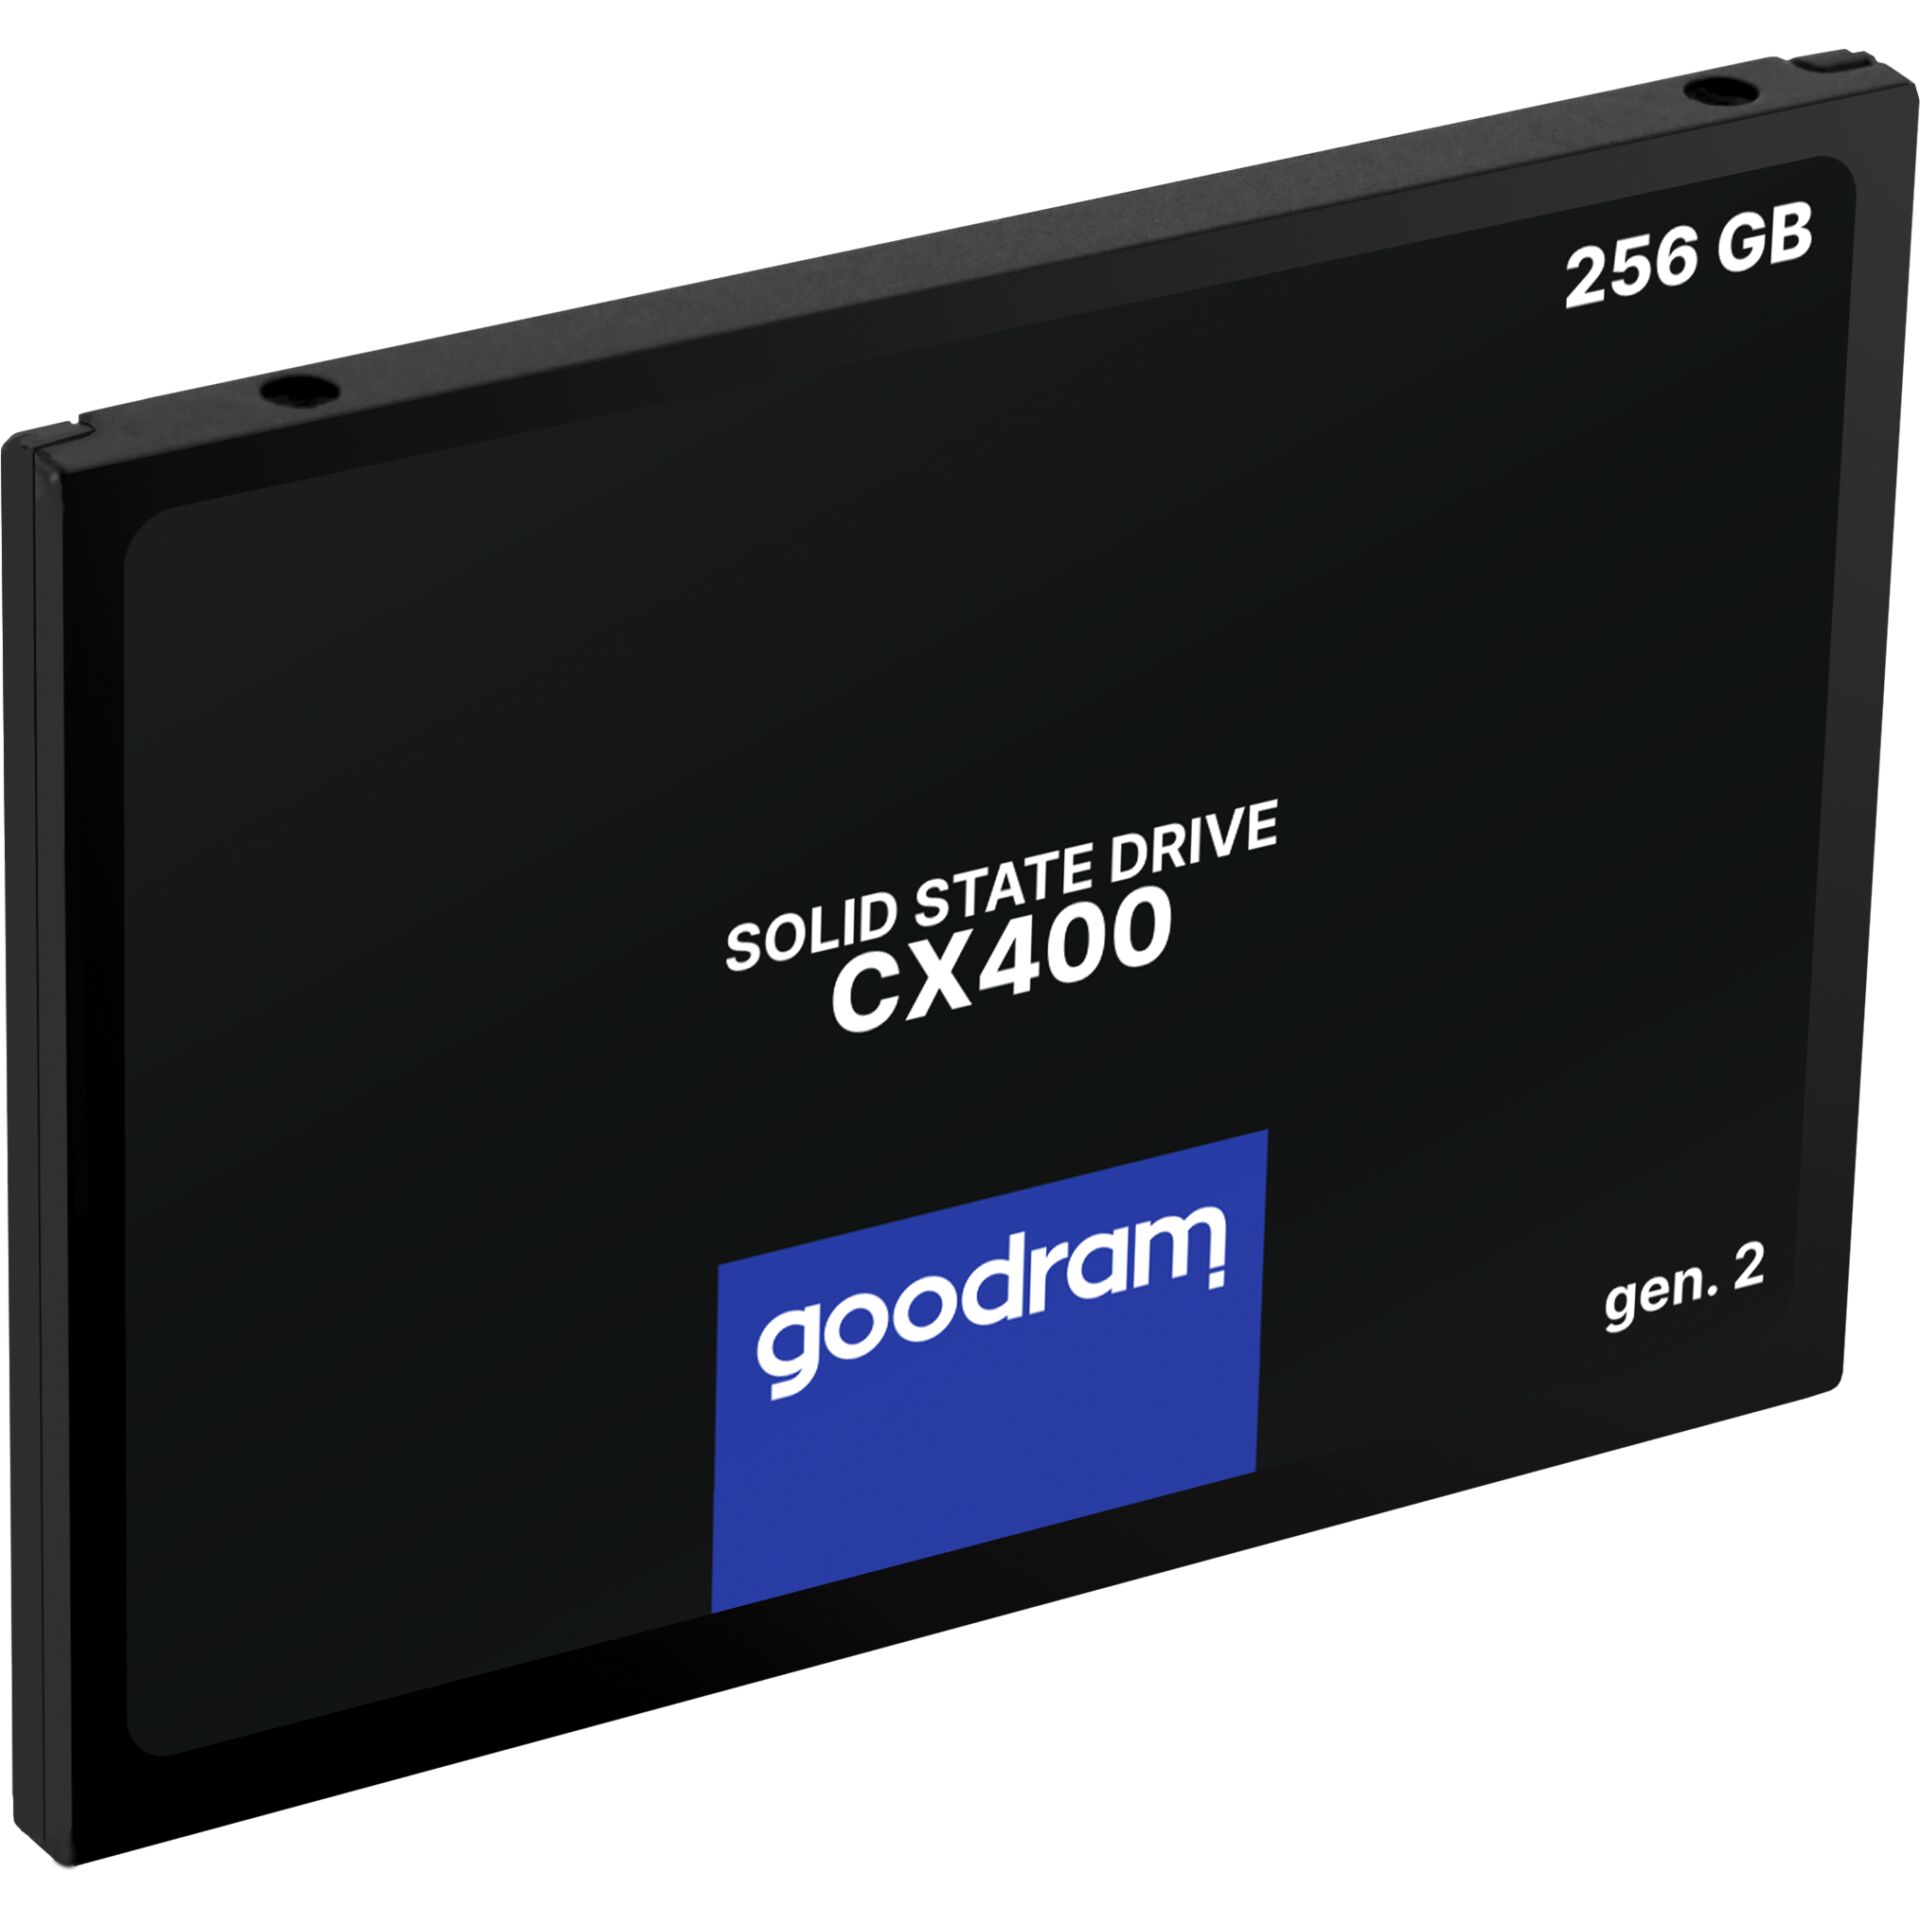 256 GB SSD Goodram CX400 Gen.2, SATA 6Gb/s, lesen: 550MB/s, schreiben: 480MB/s